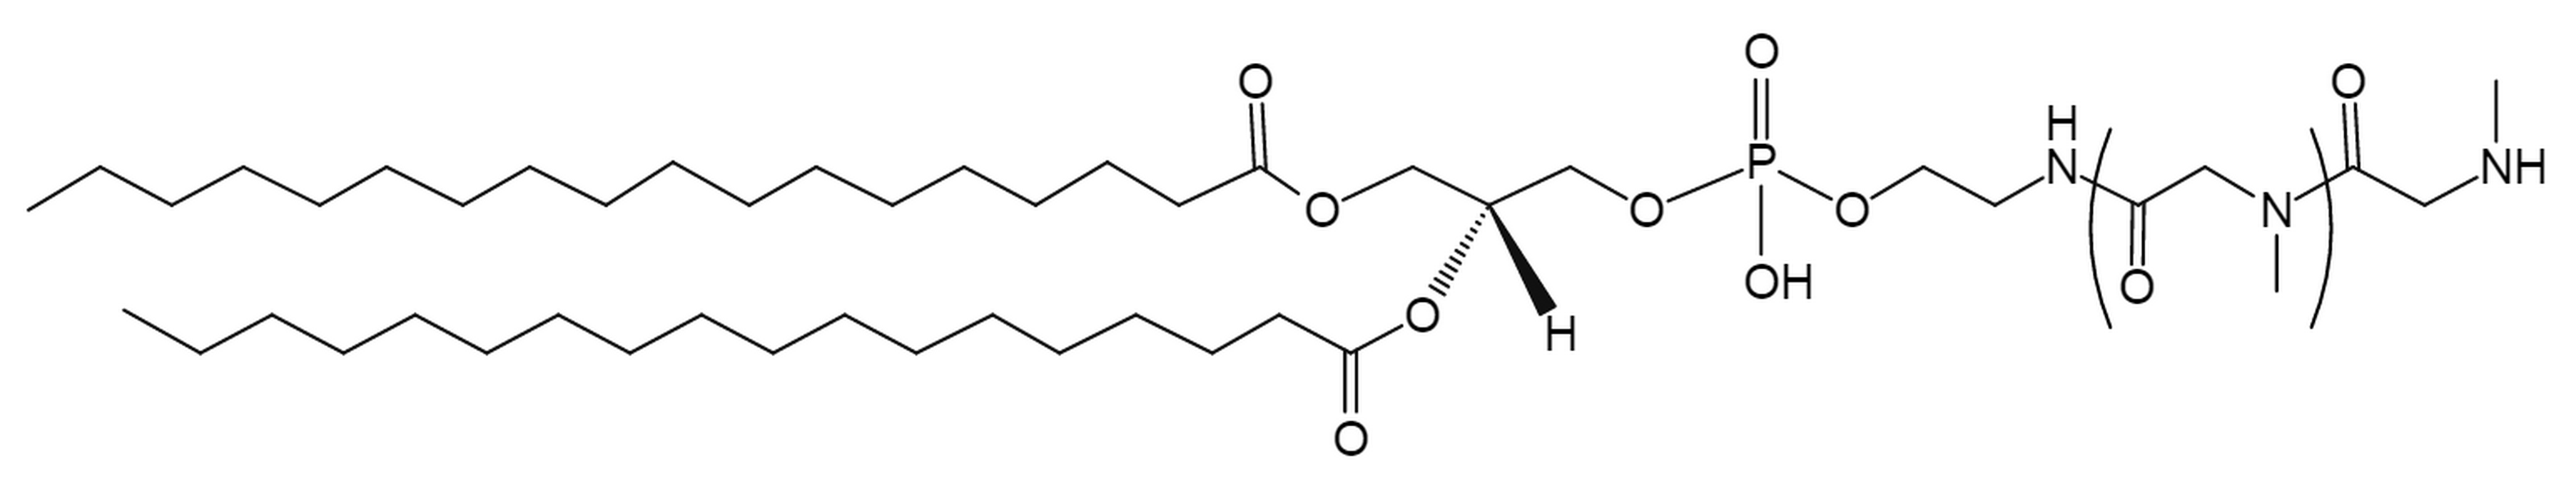 DSPE-Polysarcosine20